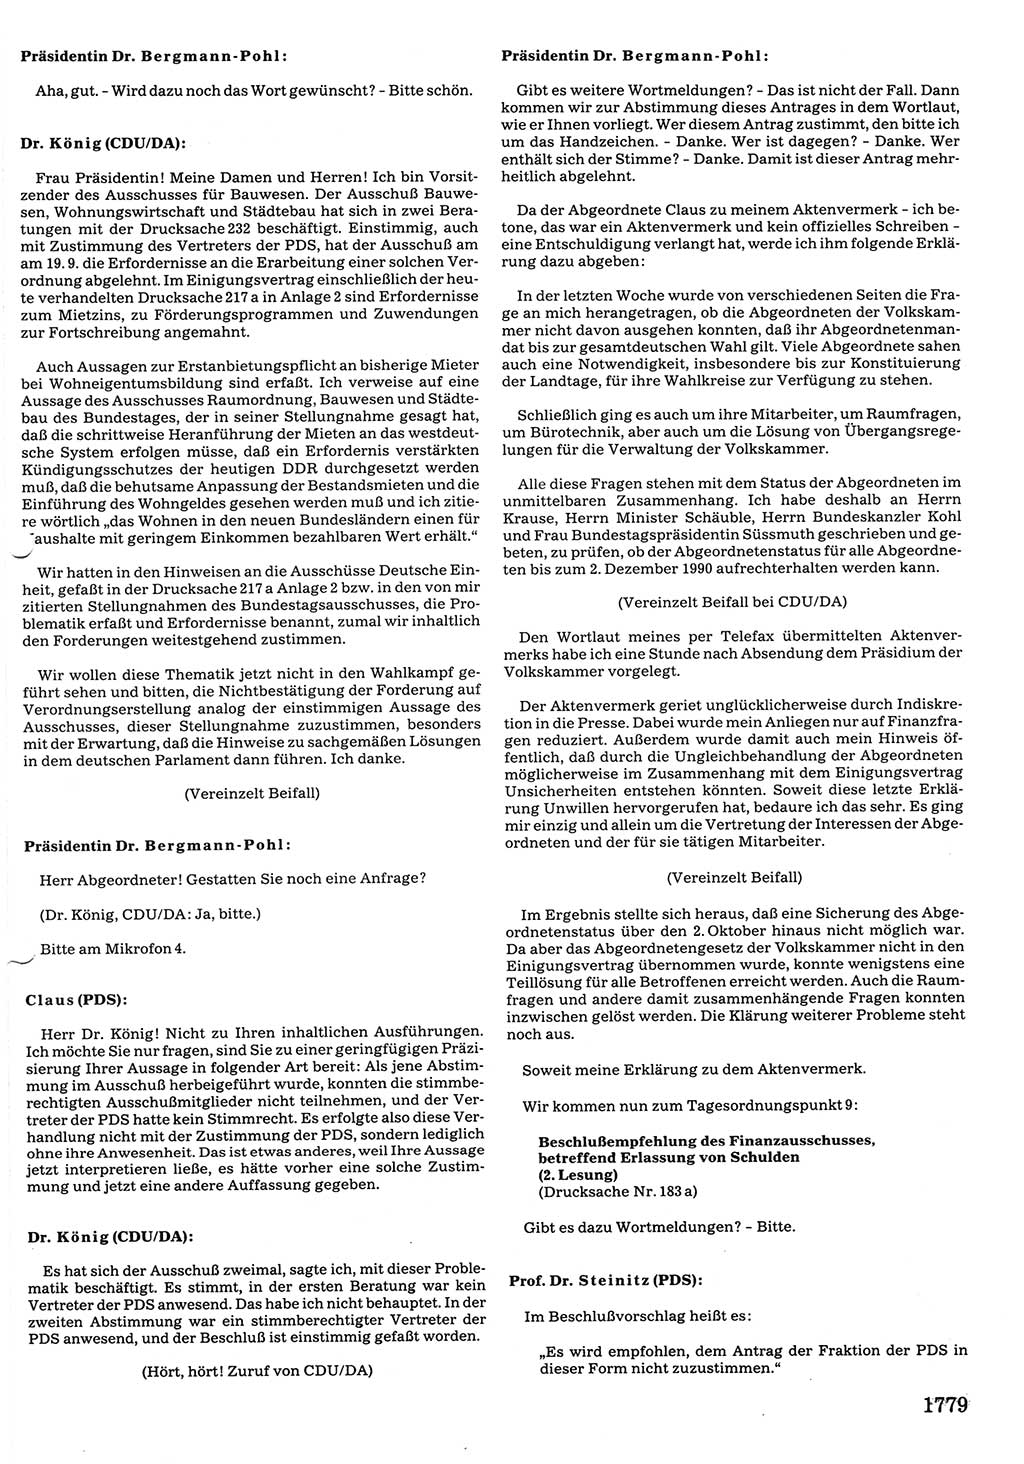 Tagungen der Volkskammer (VK) der Deutschen Demokratischen Republik (DDR), 10. Wahlperiode 1990, Seite 1779 (VK. DDR 10. WP. 1990, Prot. Tg. 1-38, 5.4.-2.10.1990, S. 1779)